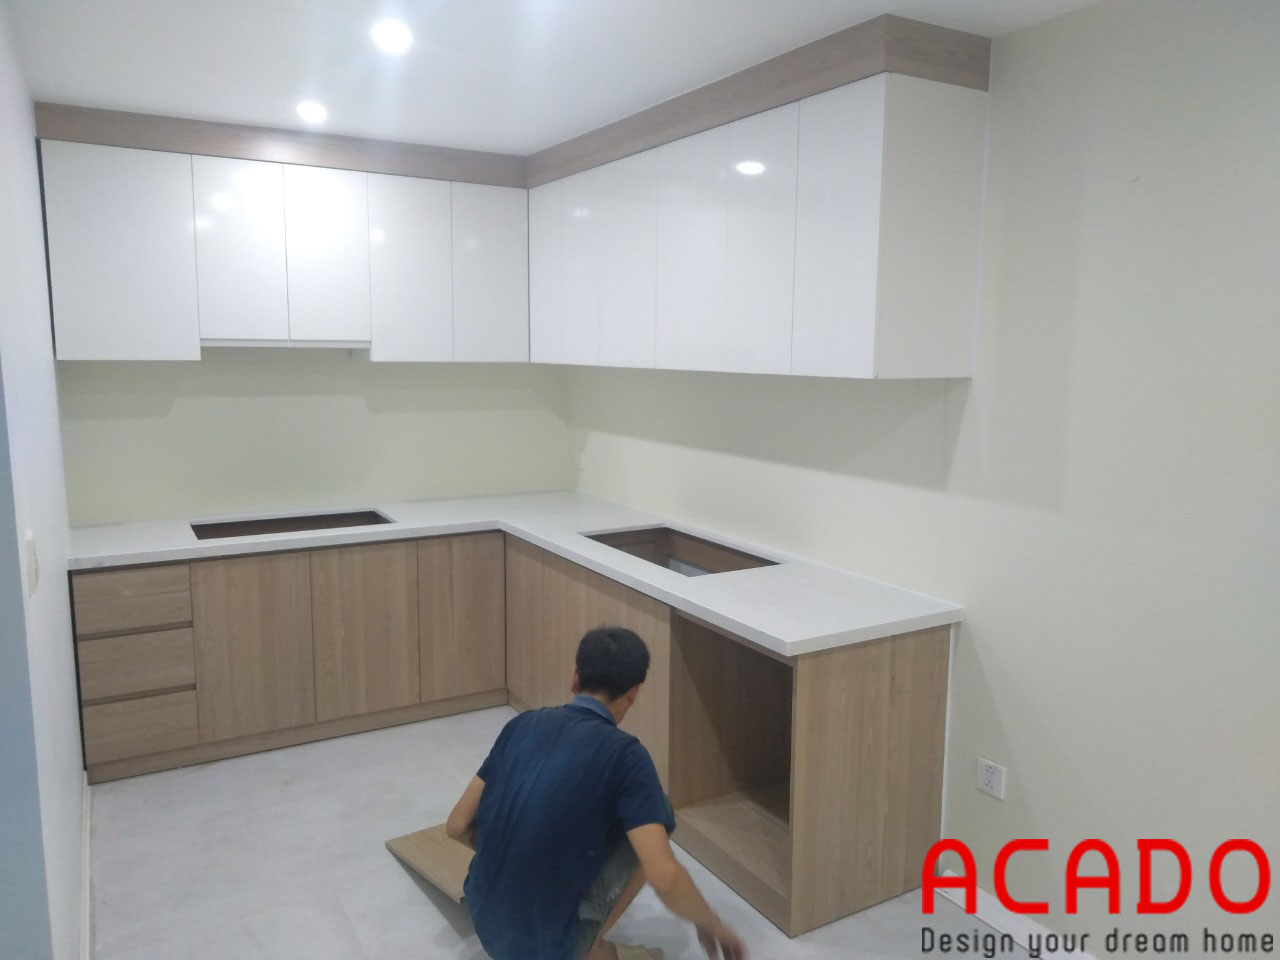 Thợ thi công ACADO đang thực hiện quá trình lắp đặt tủ bếp tại An Khánh